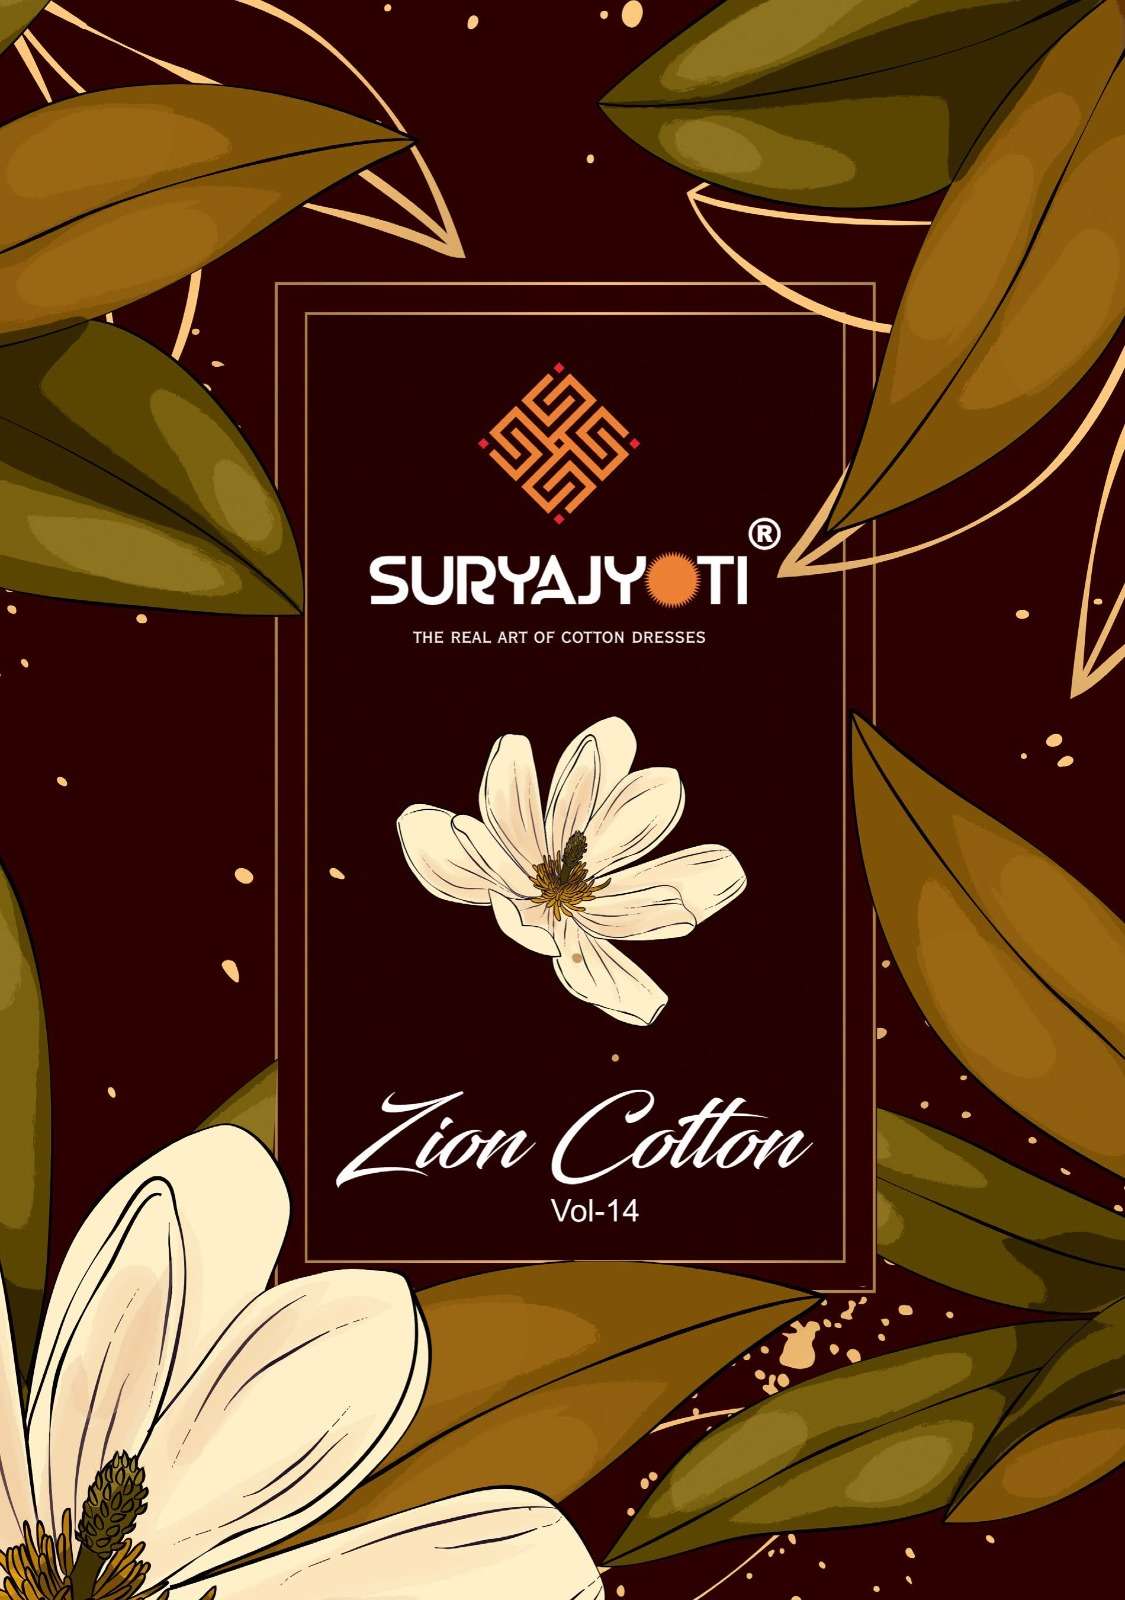 zion cotton vol 14 by suryajyoti unstitch cotton salwar suit